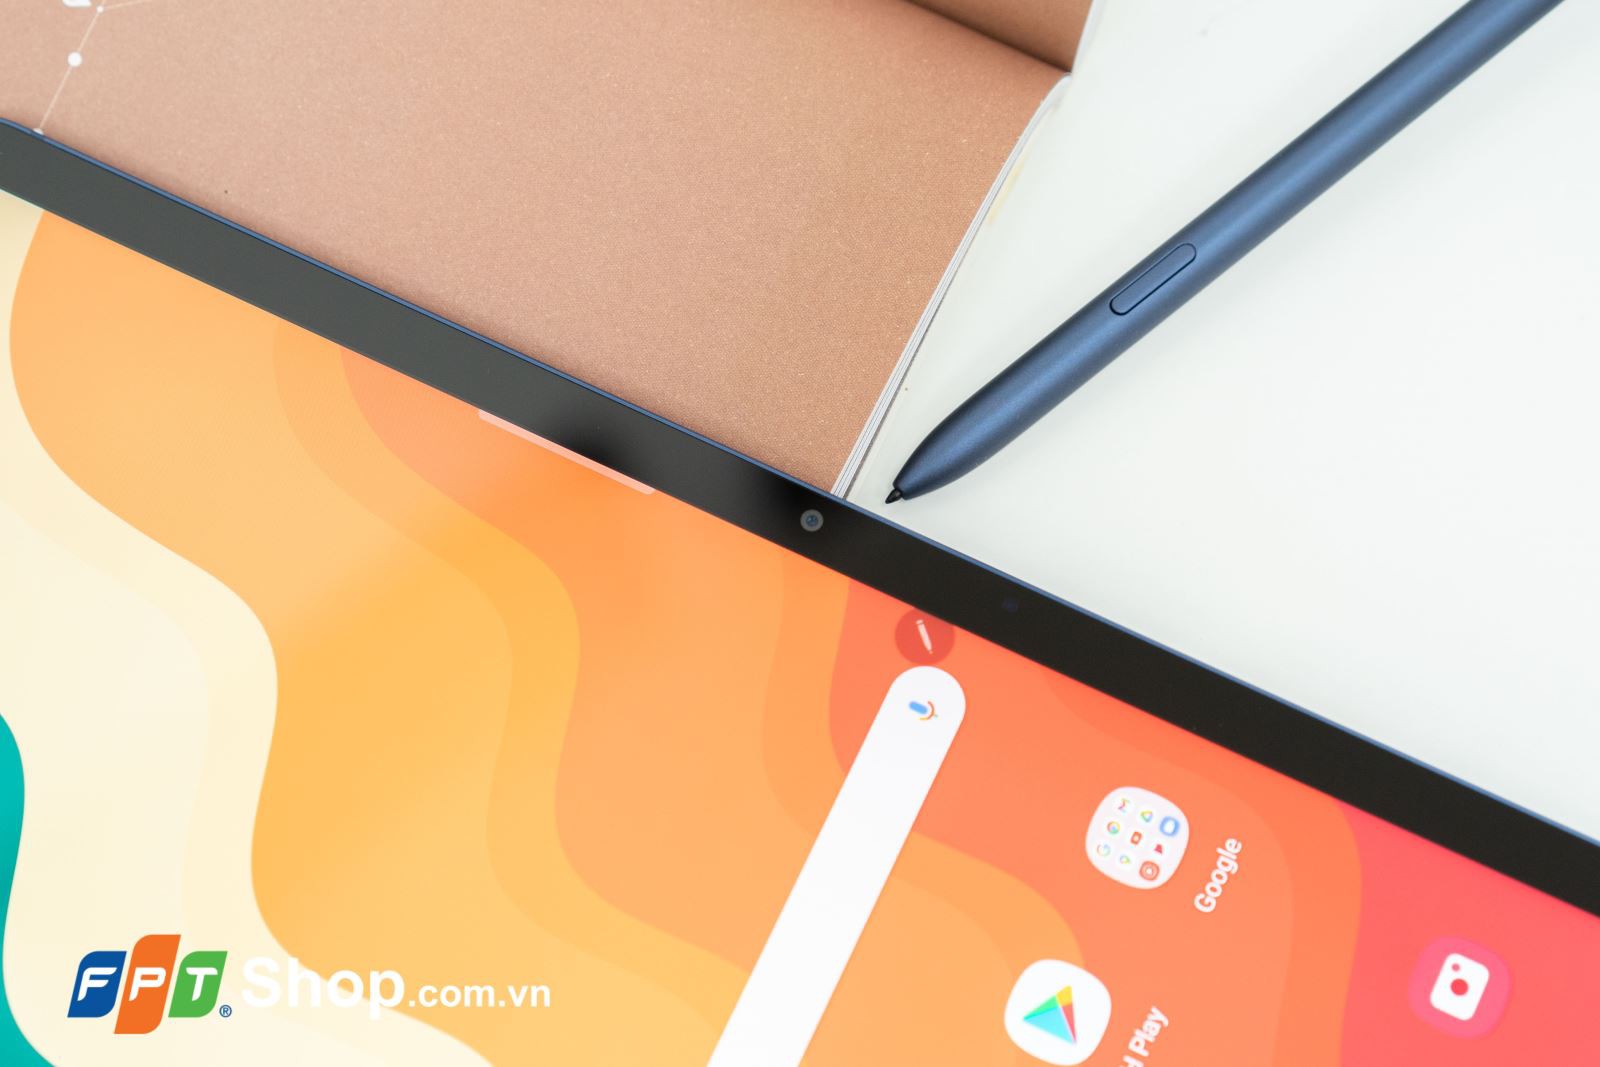 Samsung Galaxy Tab S7/S7+ Xanh Navy – Những chiếc tablet đáng giá đến từng xu 9